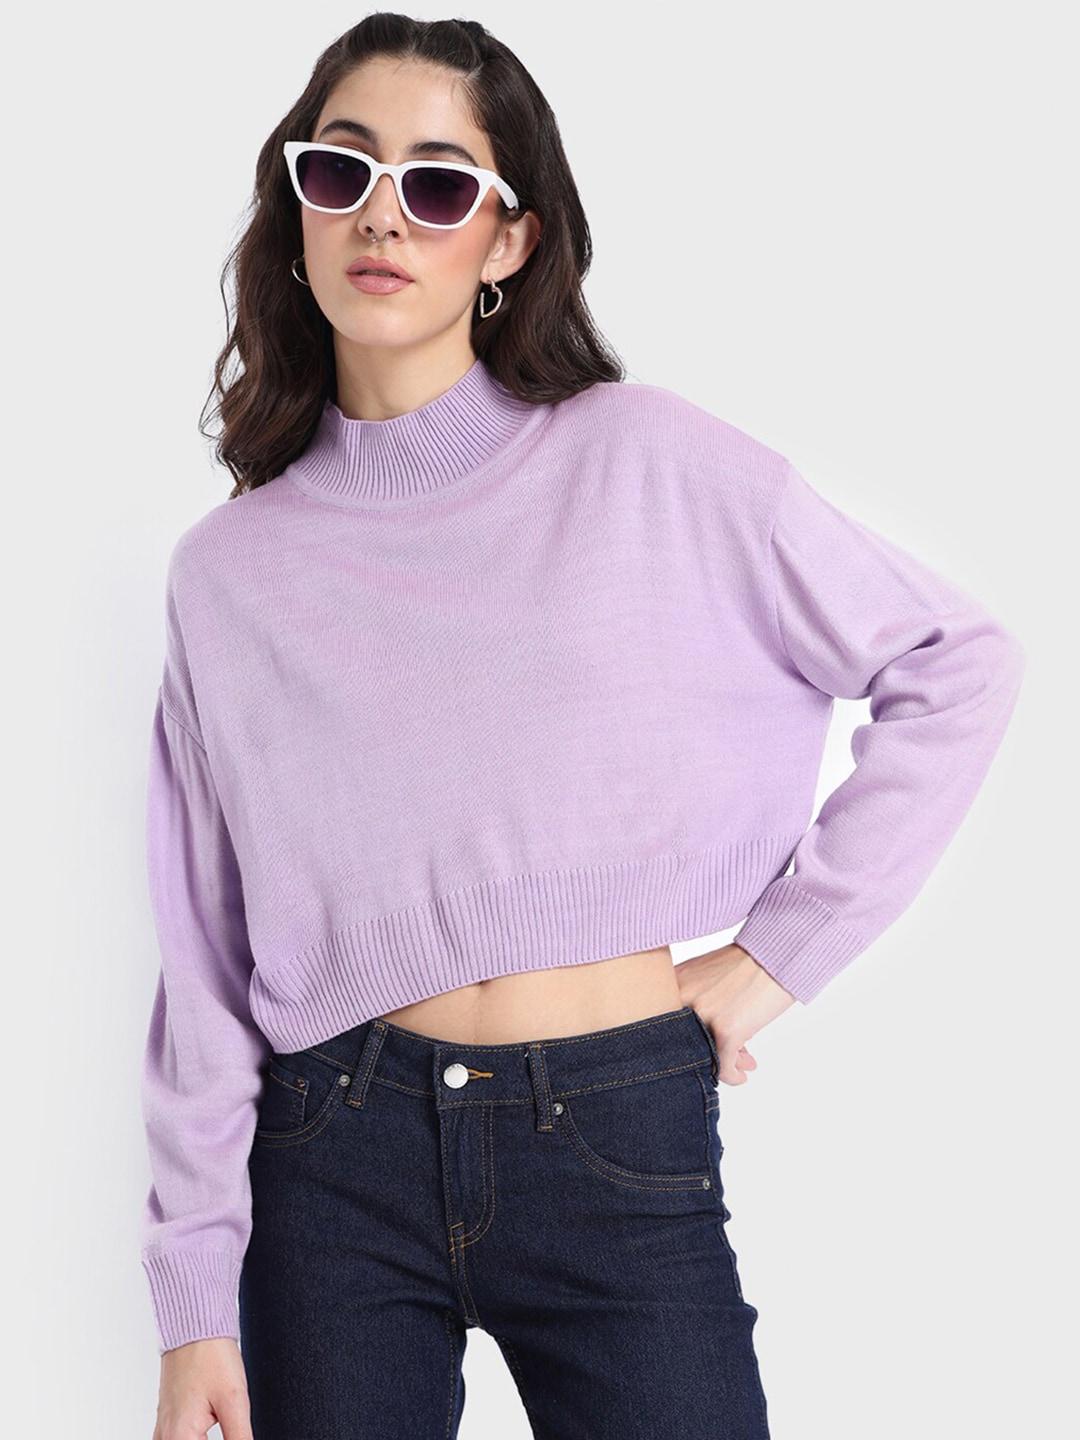 bewakoof-women-acrylic-drop-shoulder-sleeves-crop-sweater